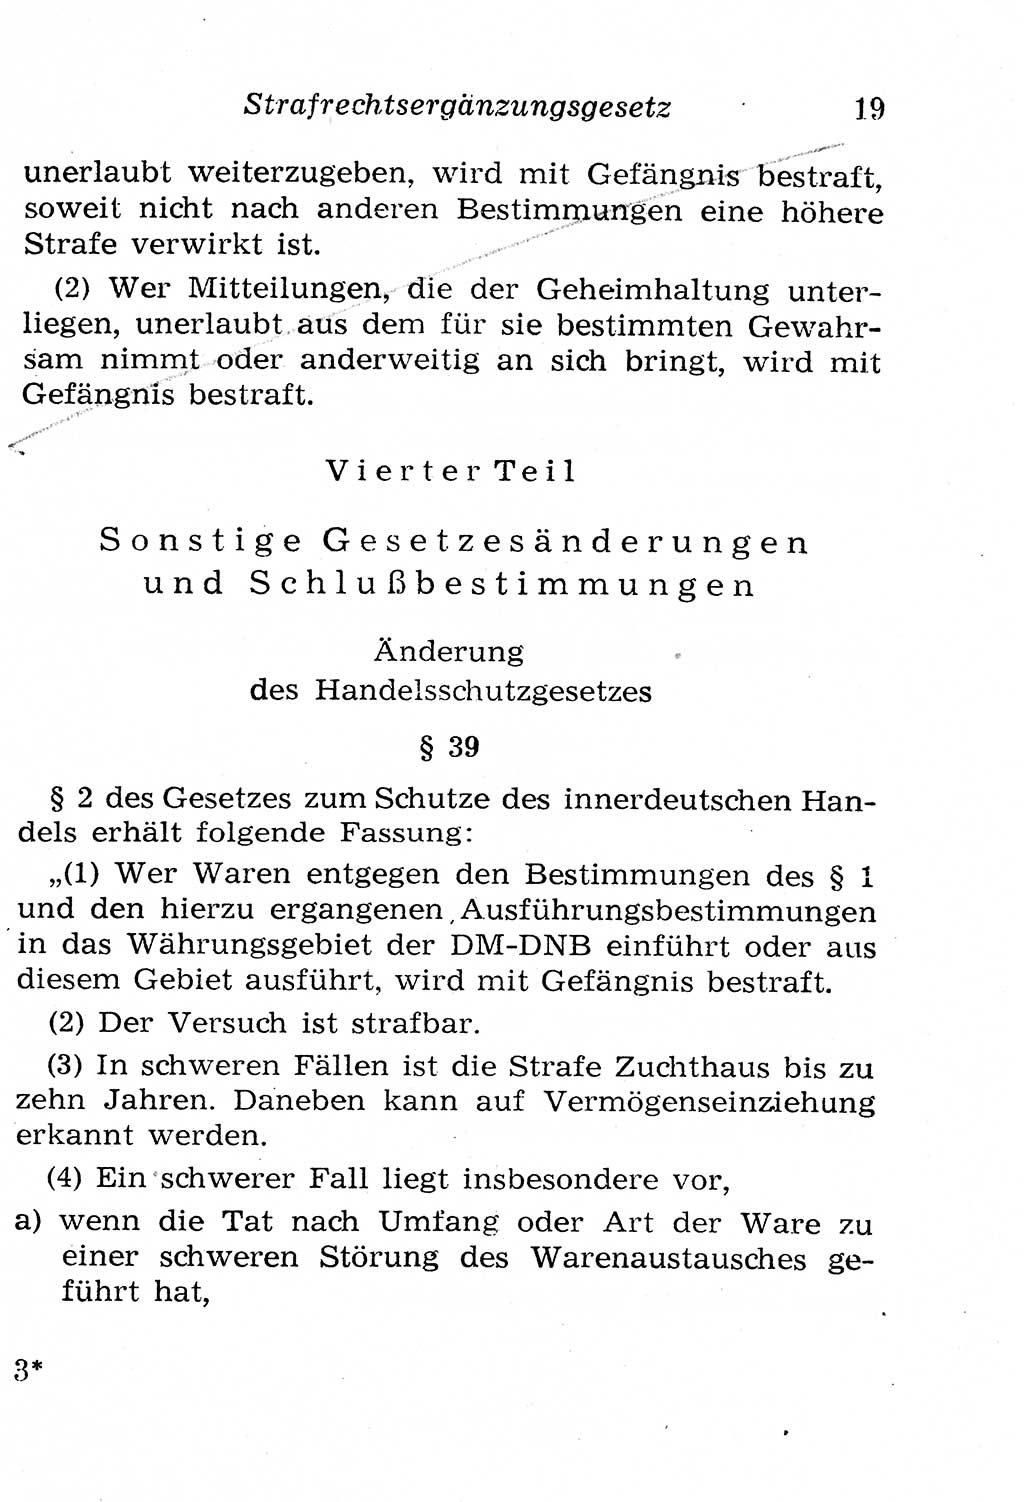 Strafgesetzbuch (StGB) und andere Strafgesetze [Deutsche Demokratische Republik (DDR)] 1958, Seite 19 (StGB Strafges. DDR 1958, S. 19)